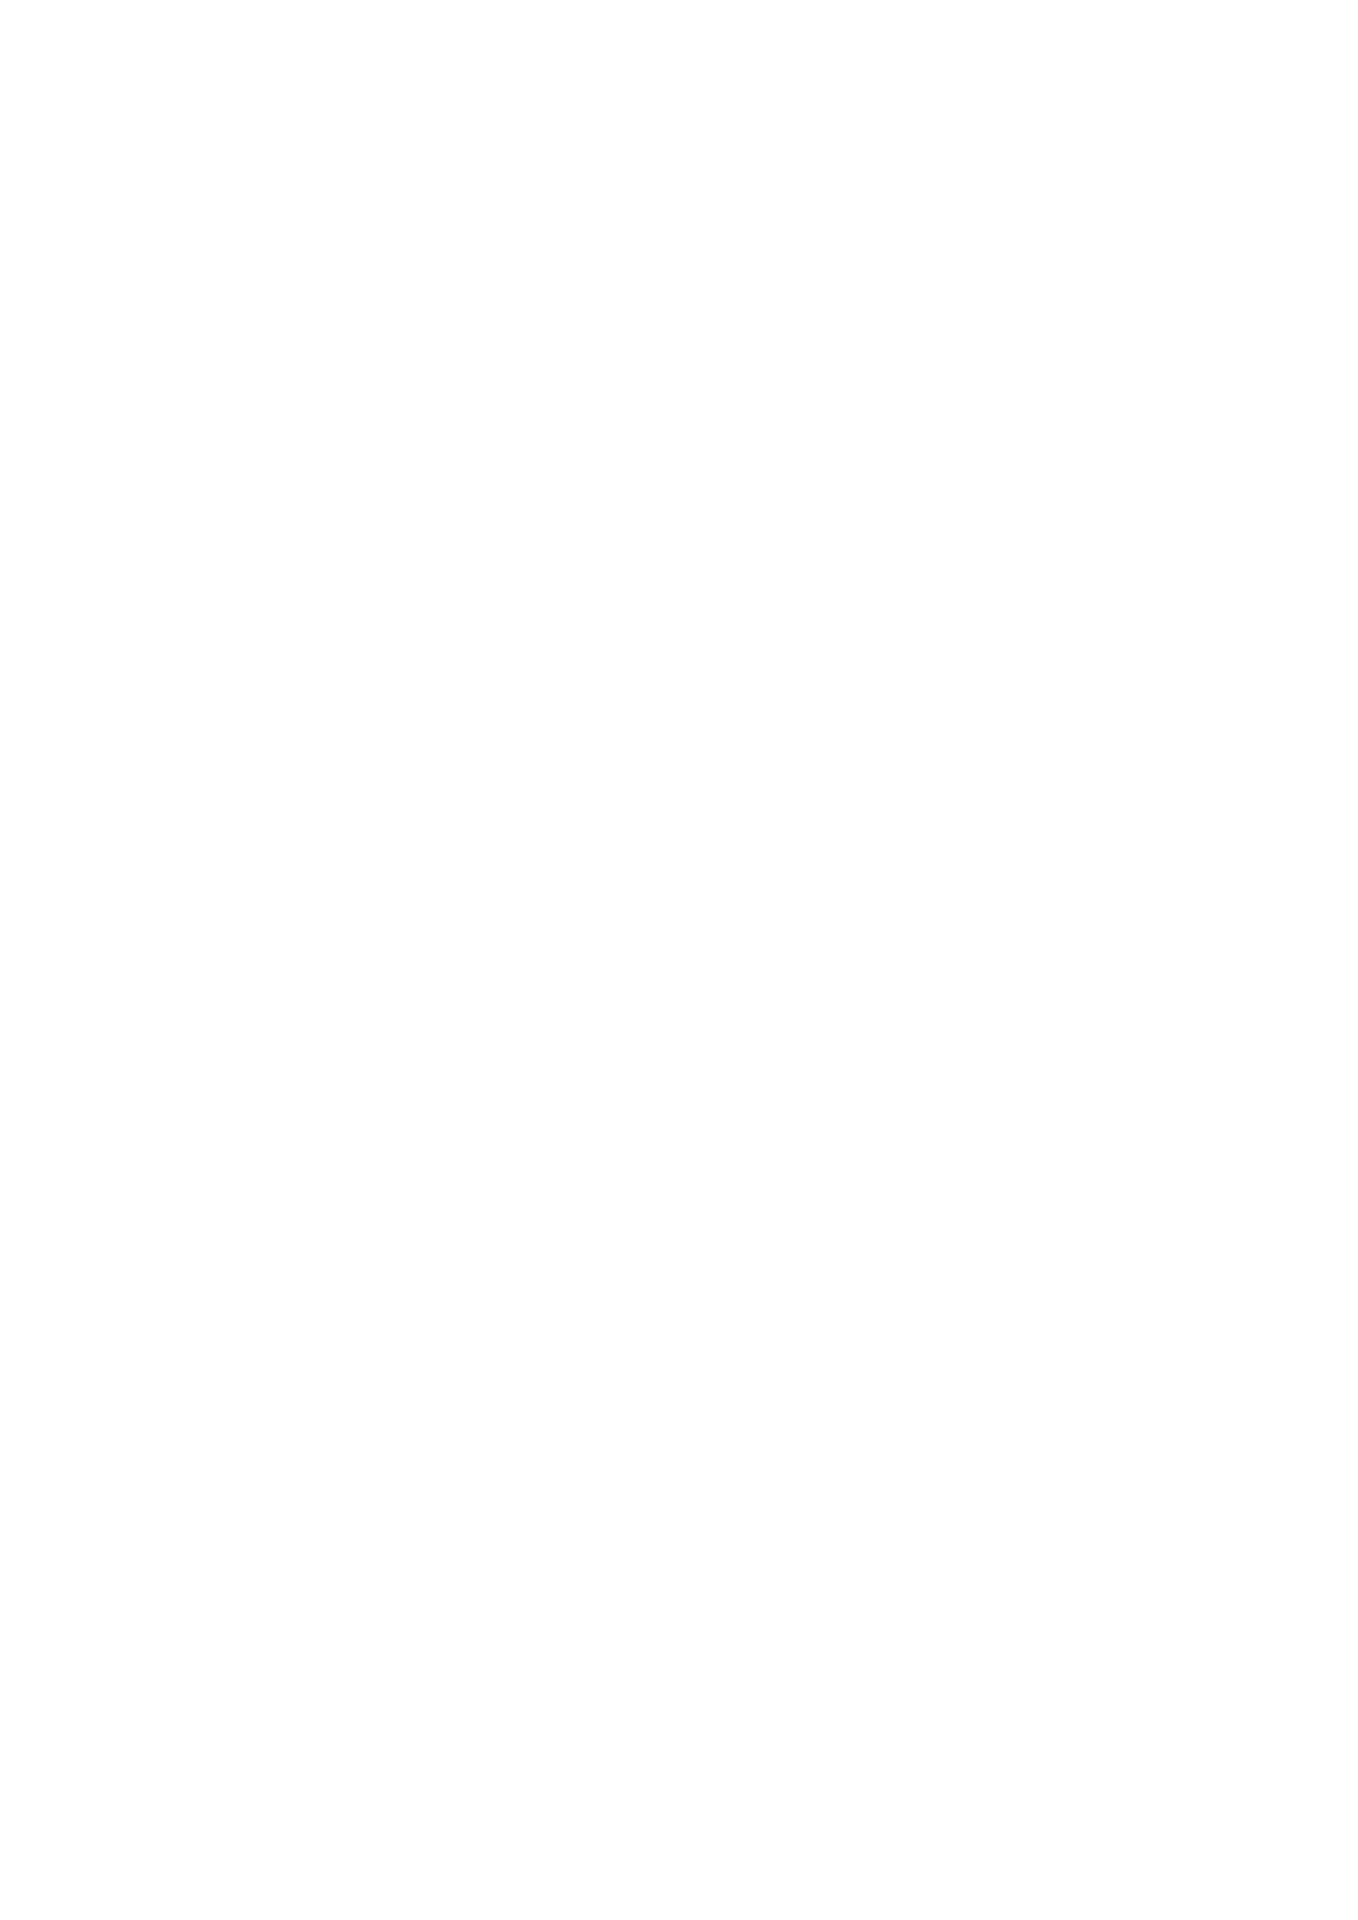 Capa da Fumdhamentos XVIII - N.1